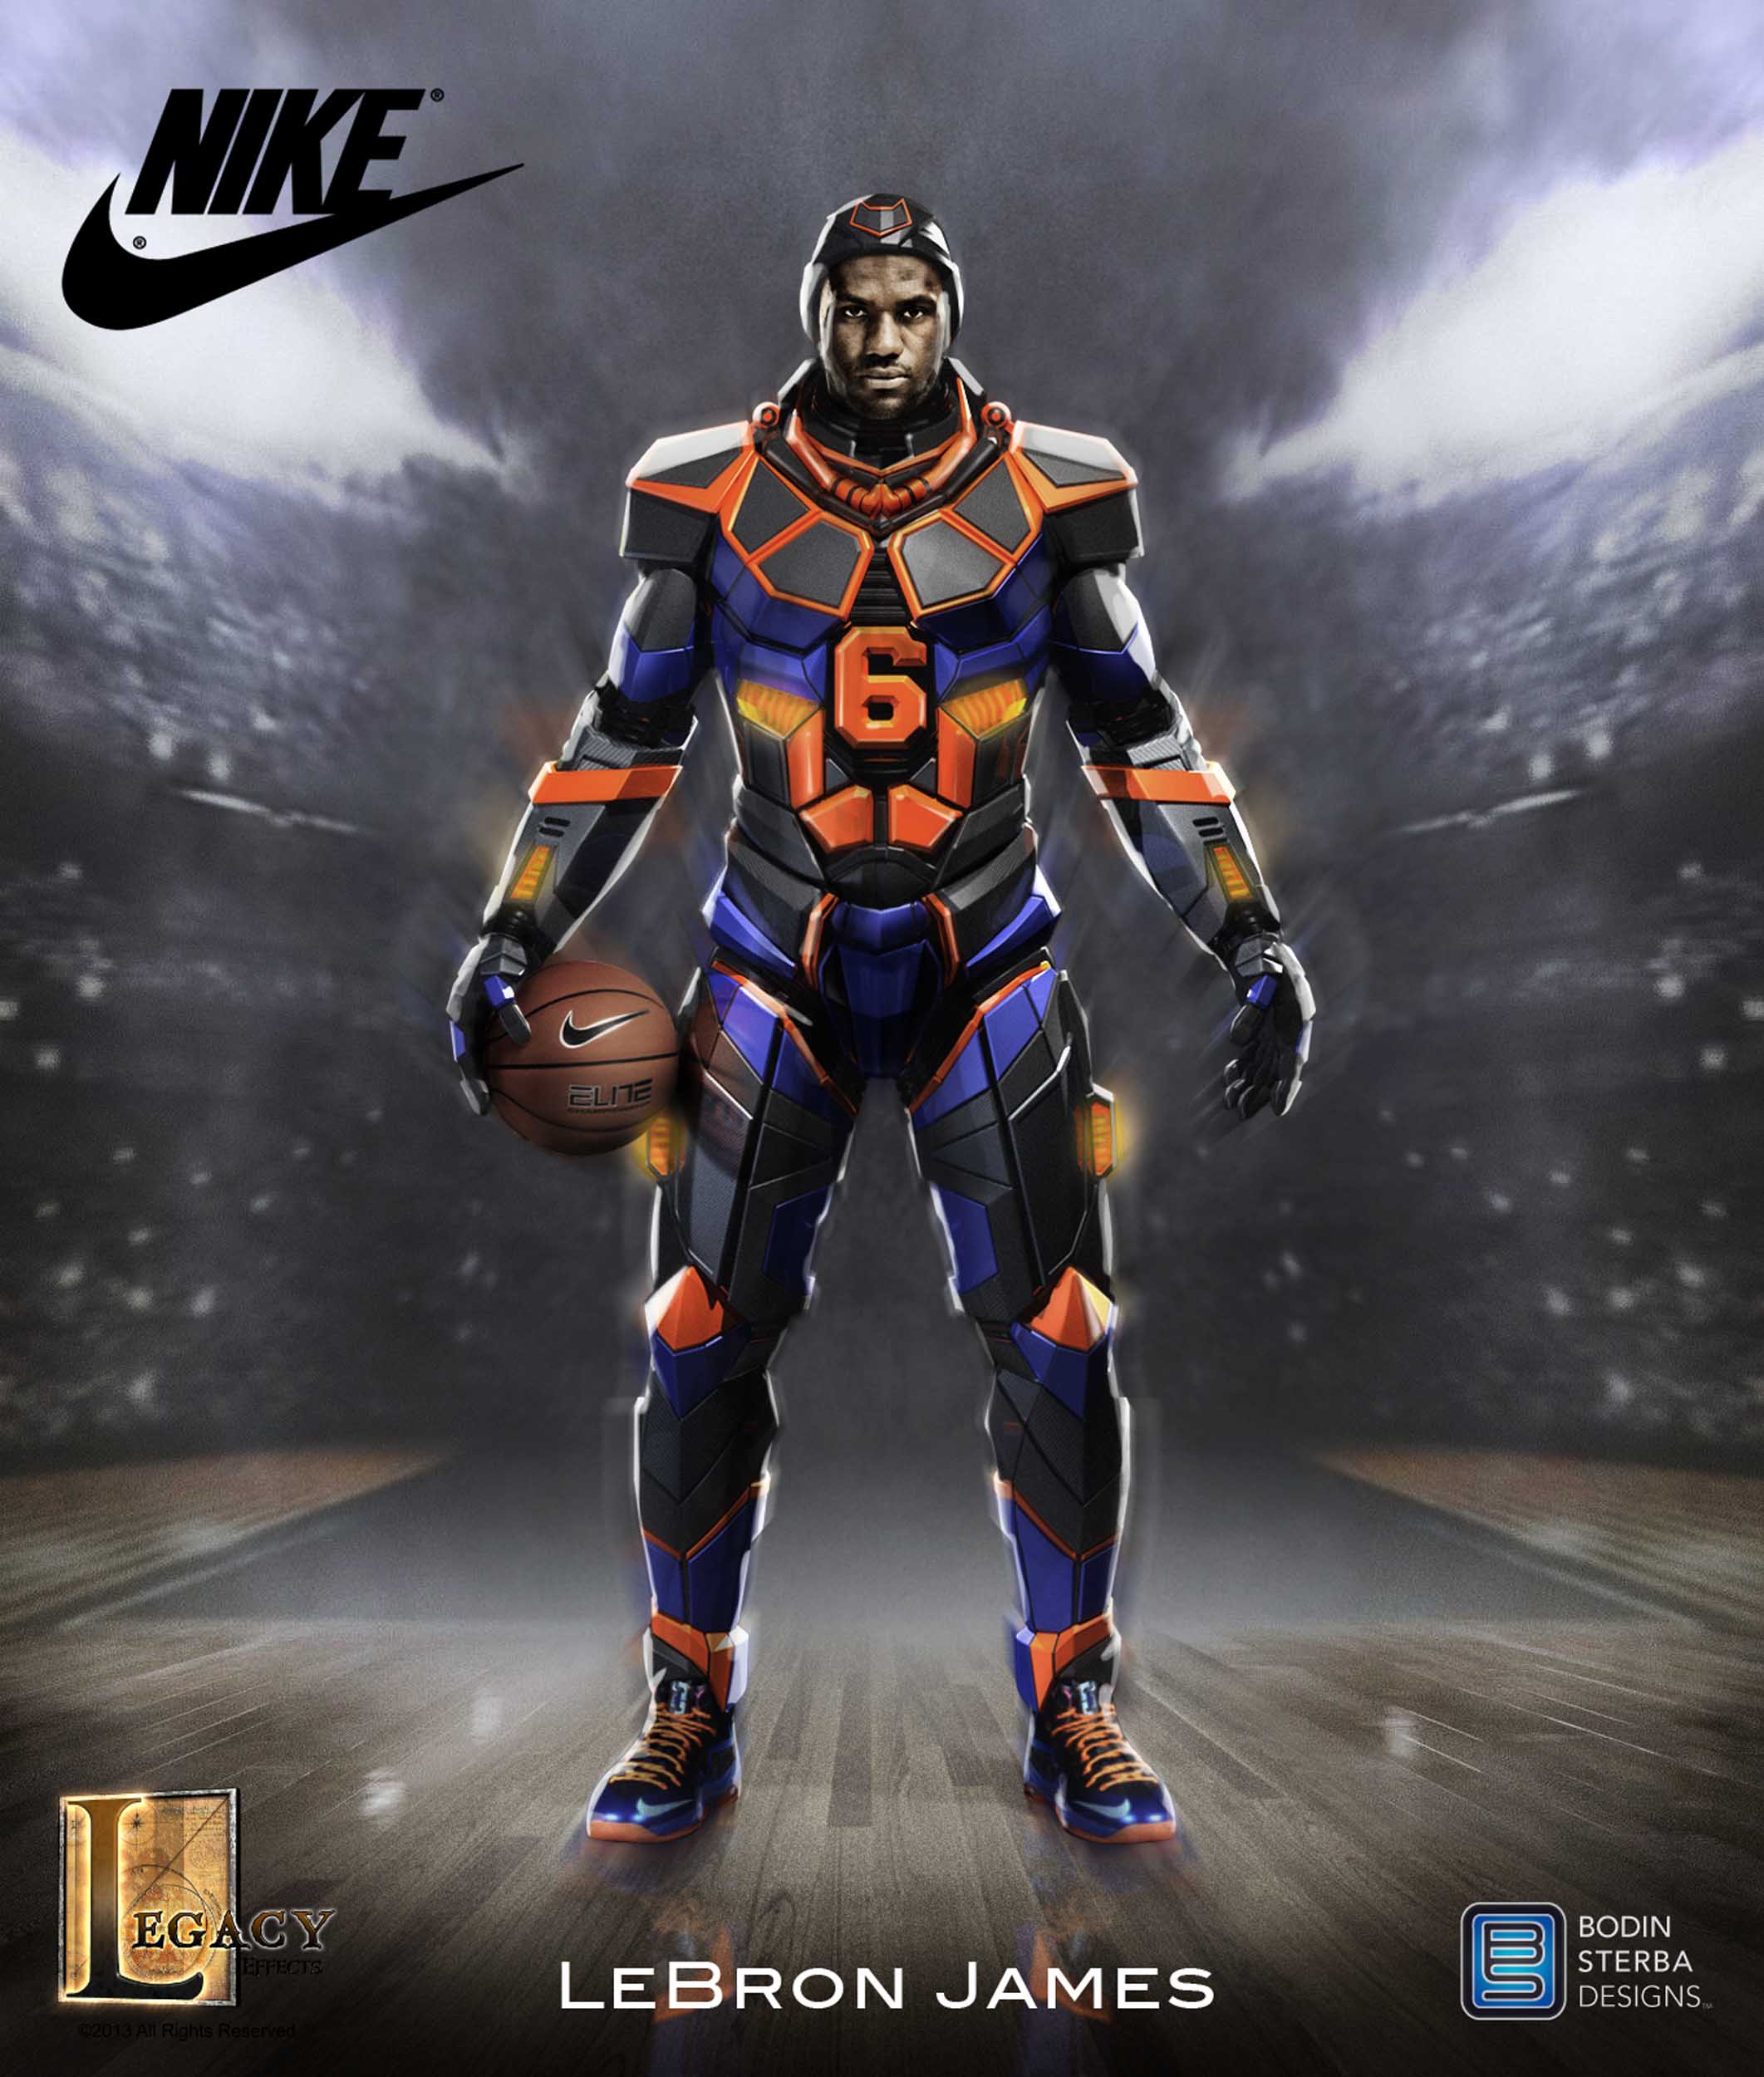 Lebron James Nike Superhero Elite suit final concept.